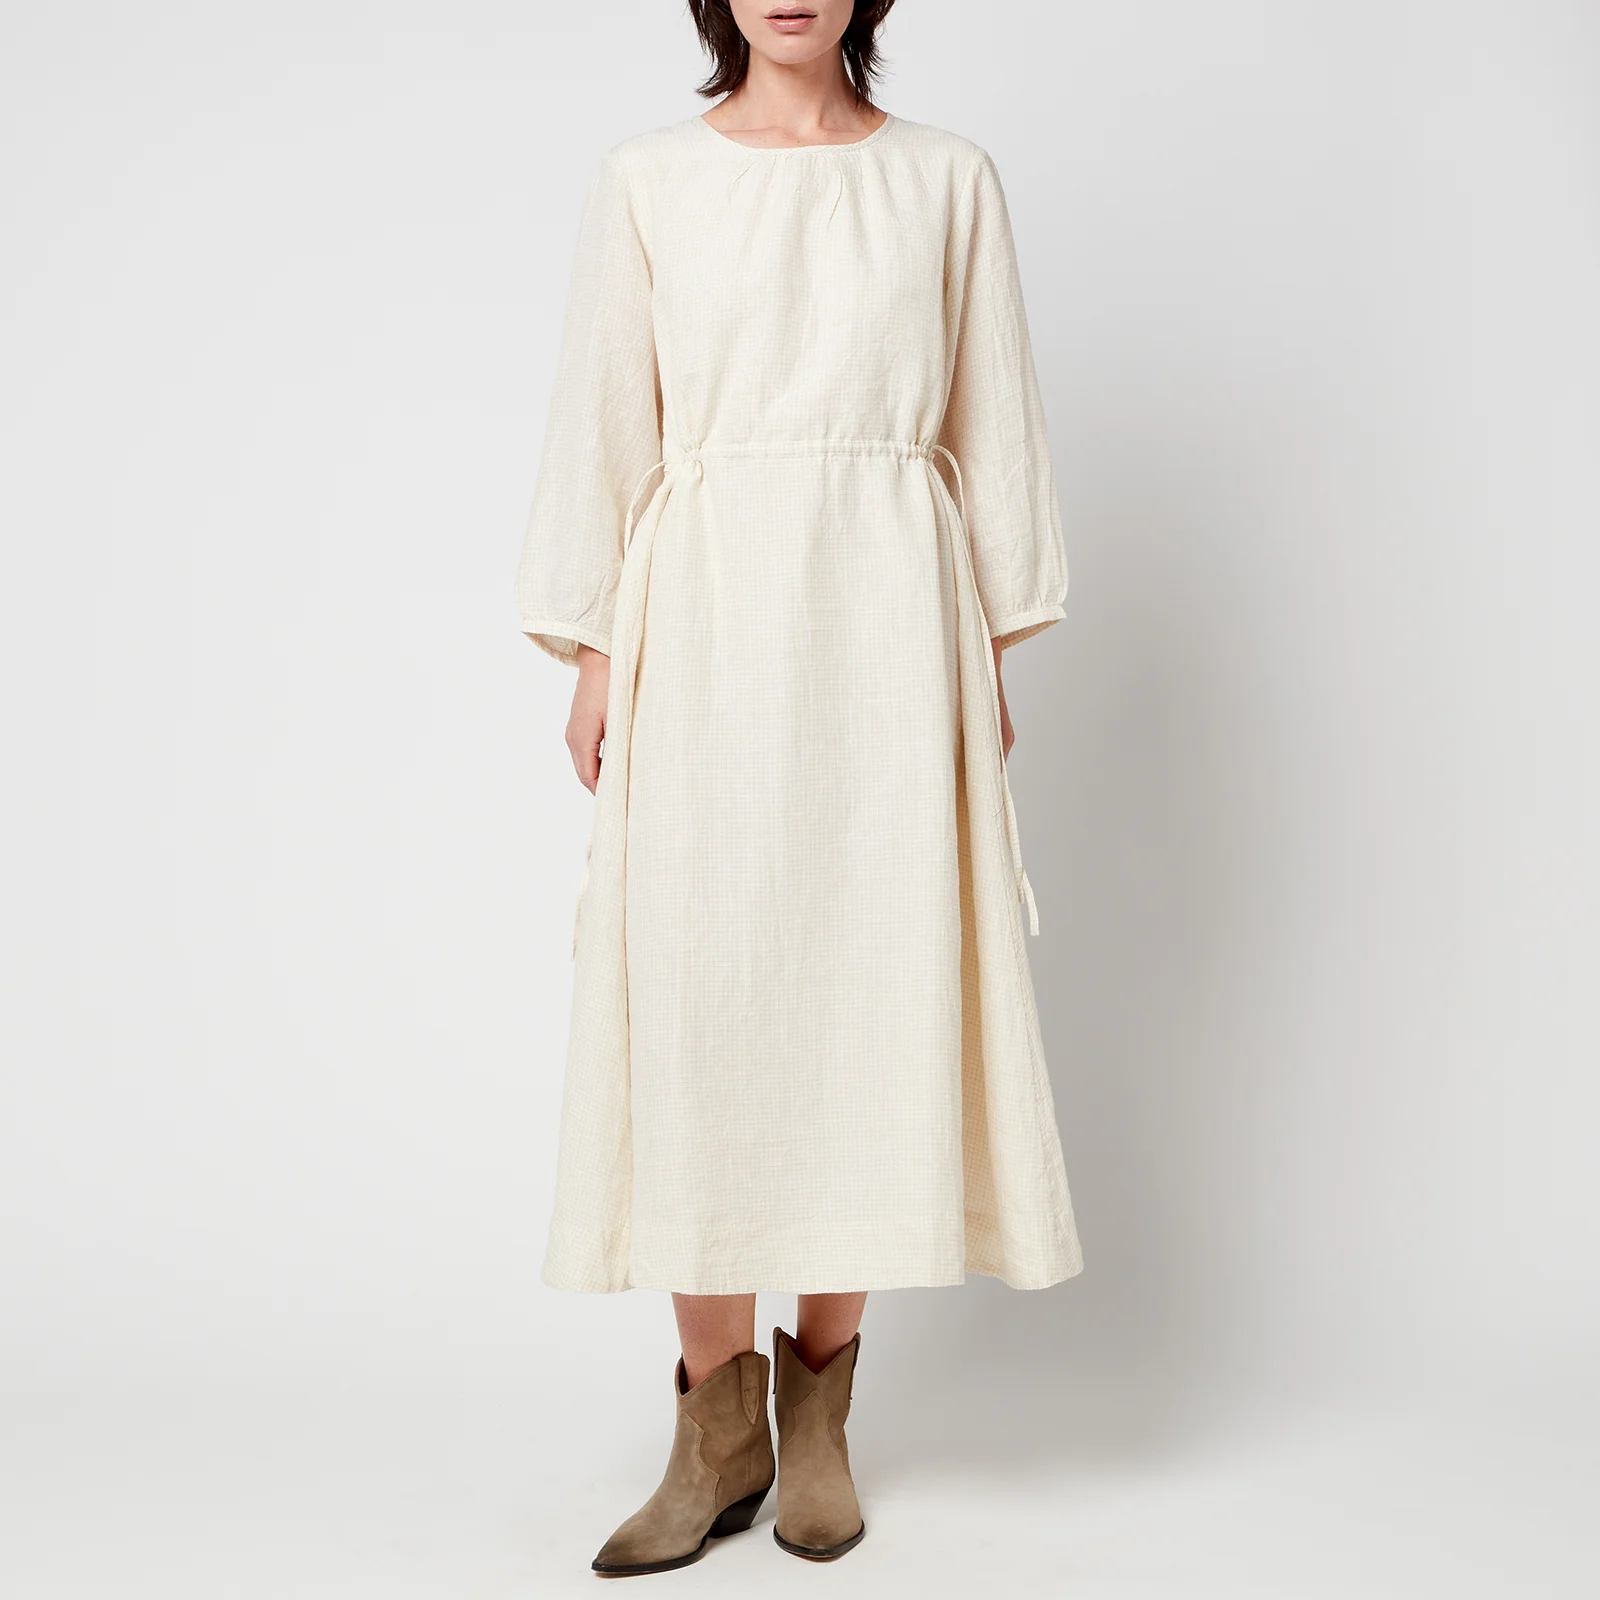 Skall Studio Women's Lucca Linen Dress - White Image 1